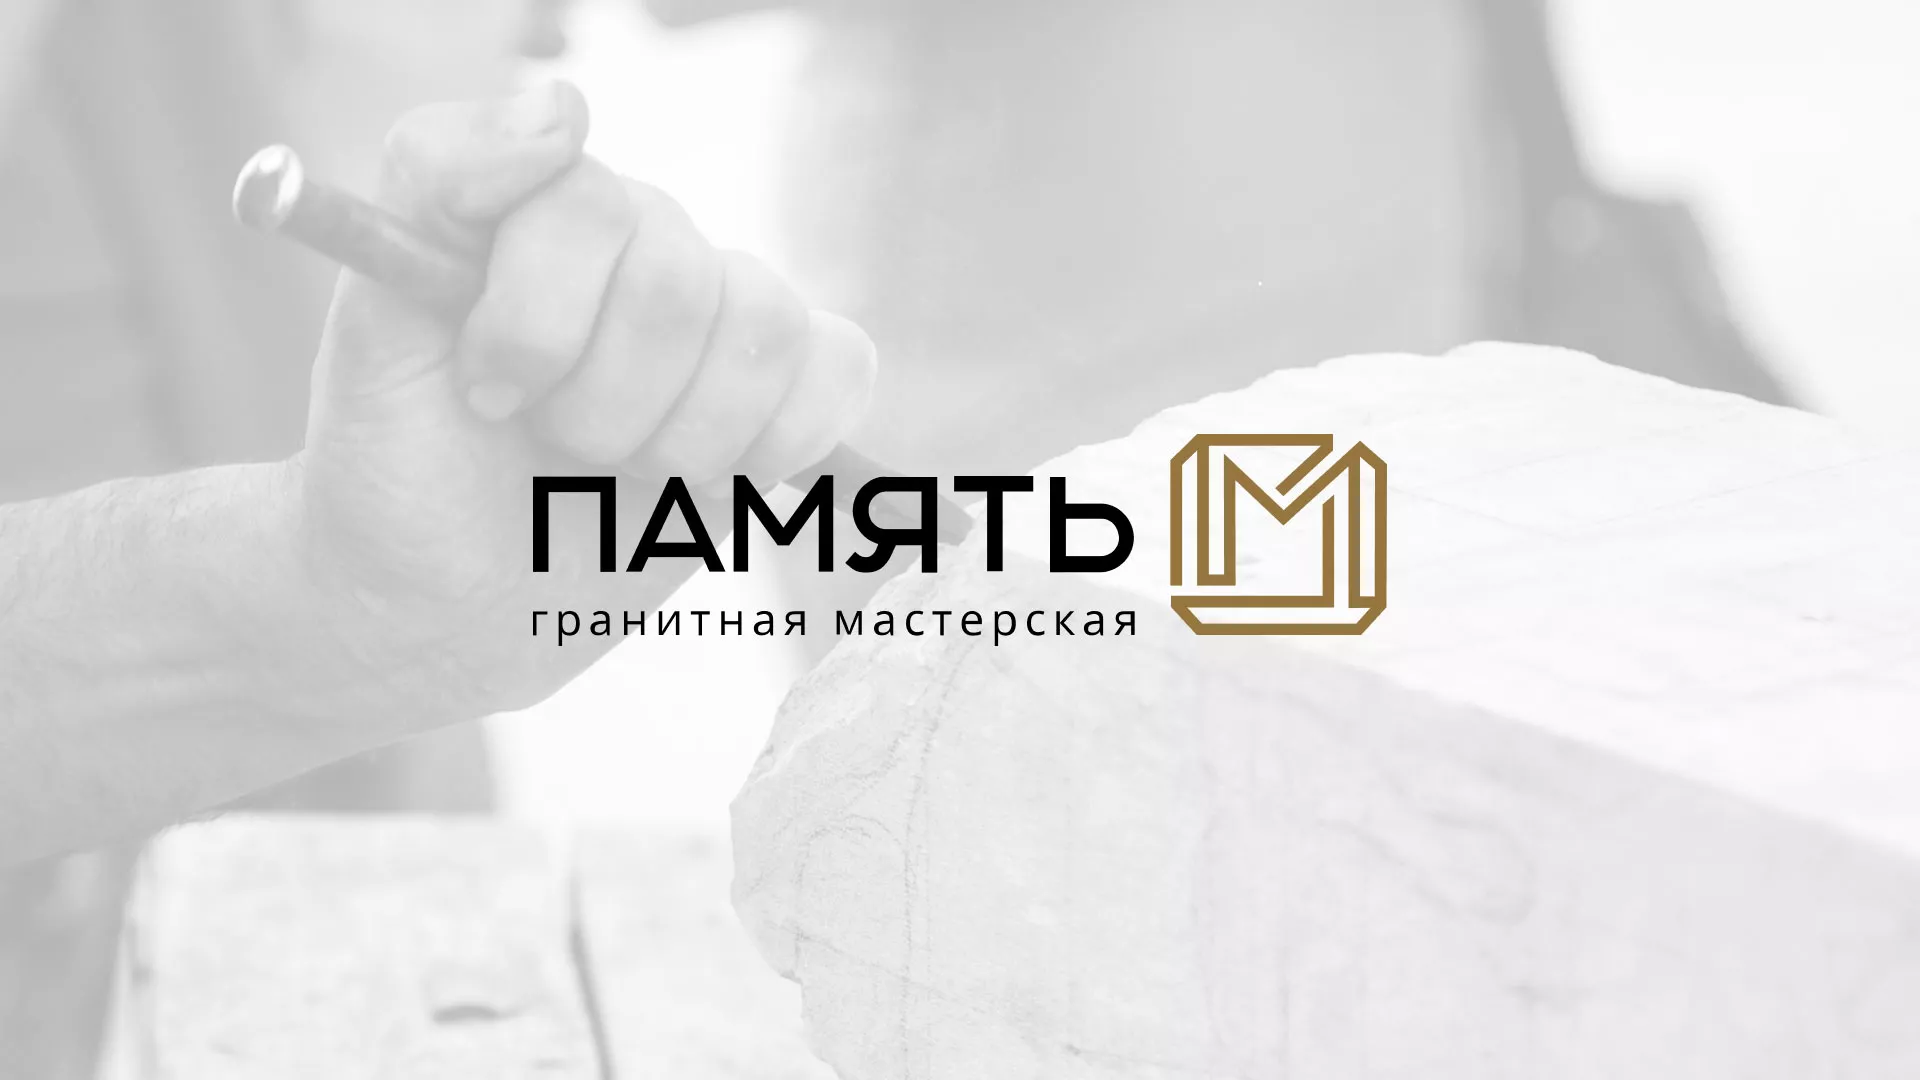 Разработка логотипа и сайта компании «Память-М» в Таганроге